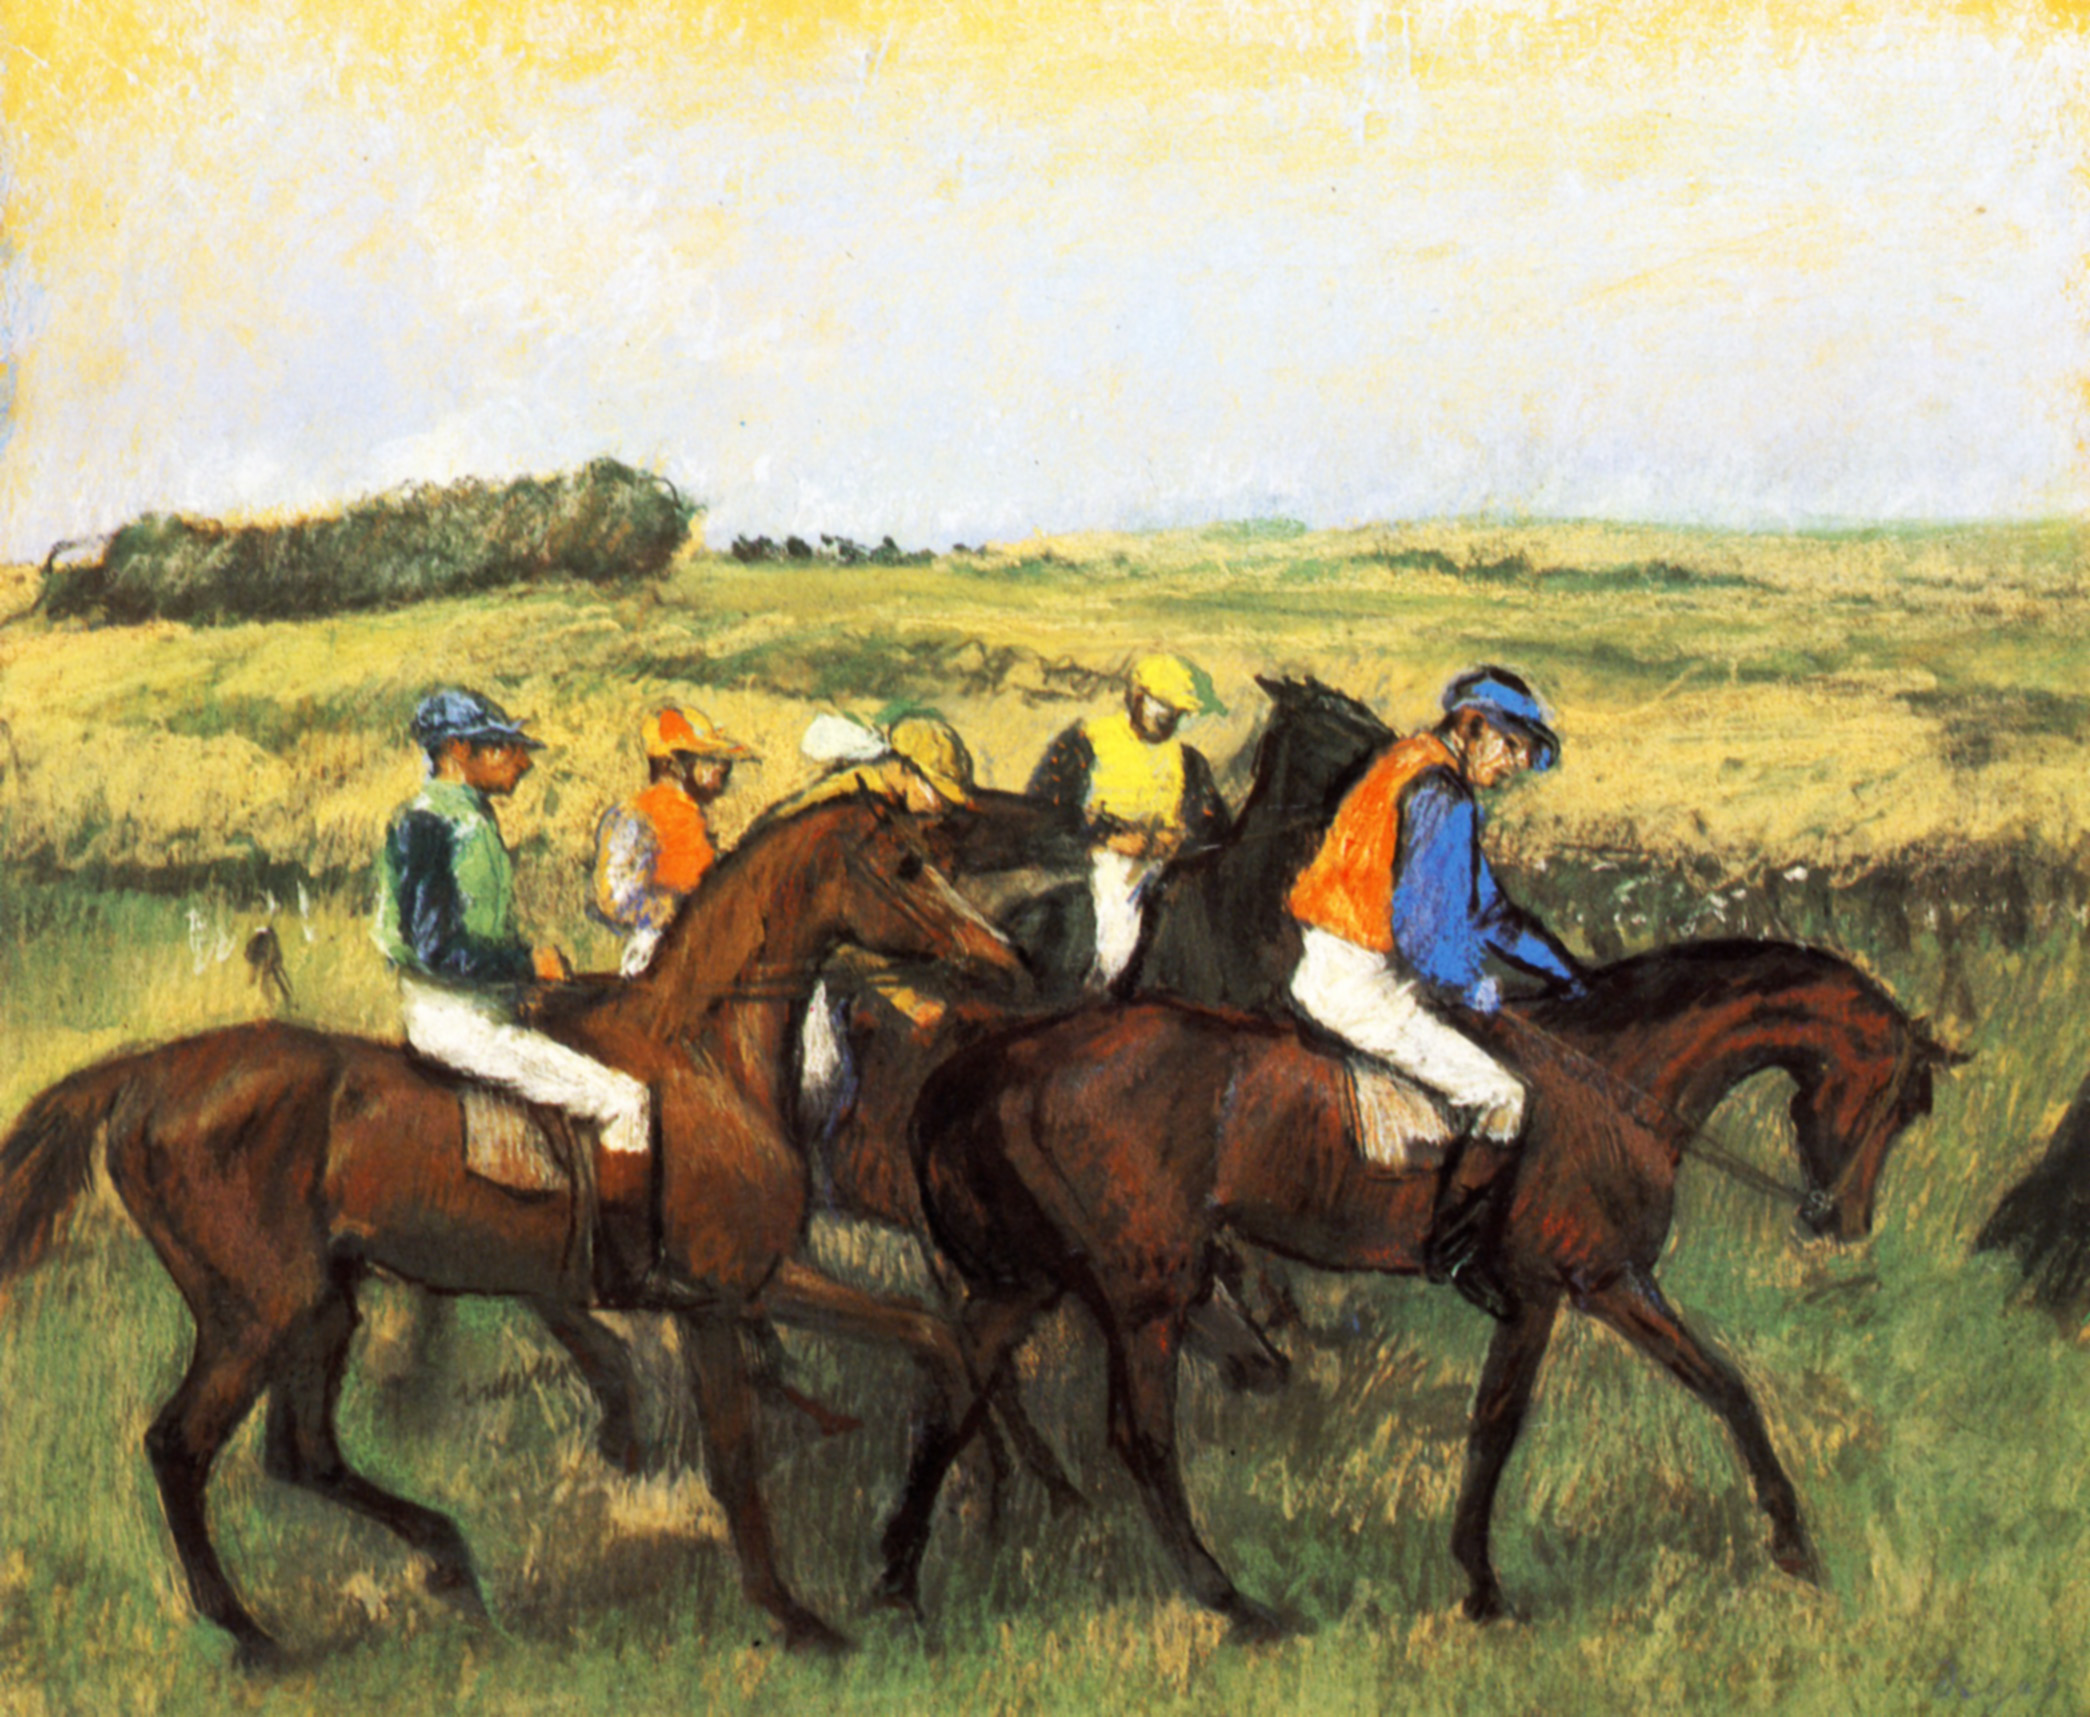 Эдгар Дега. "Лошади на скачках". 1888. Кунстхаус, Цюрих.